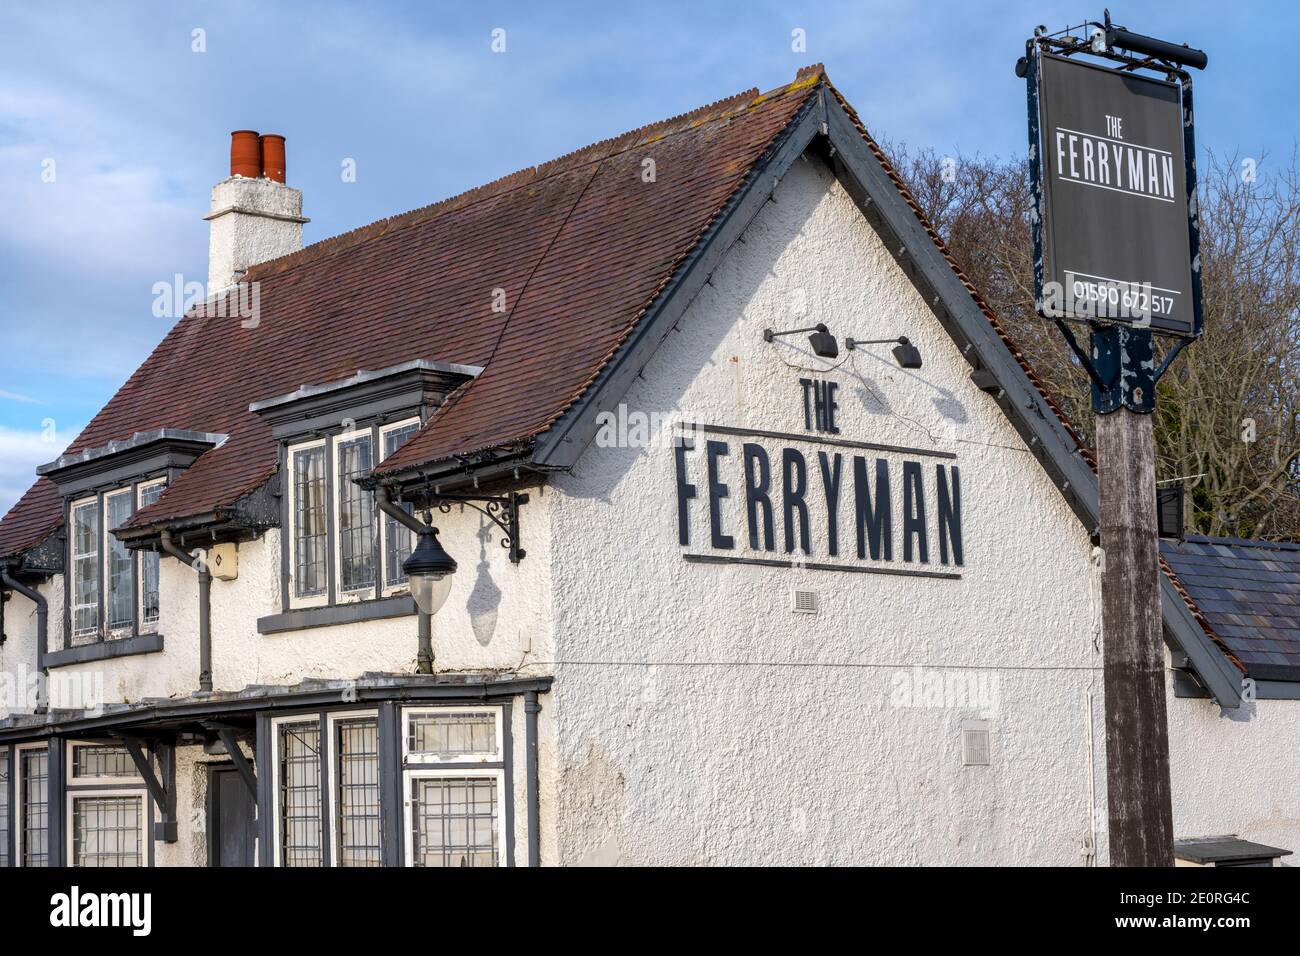 The Ferryman - public house - Lymington, New Forest, Hampshire, England, UK Stock Photo